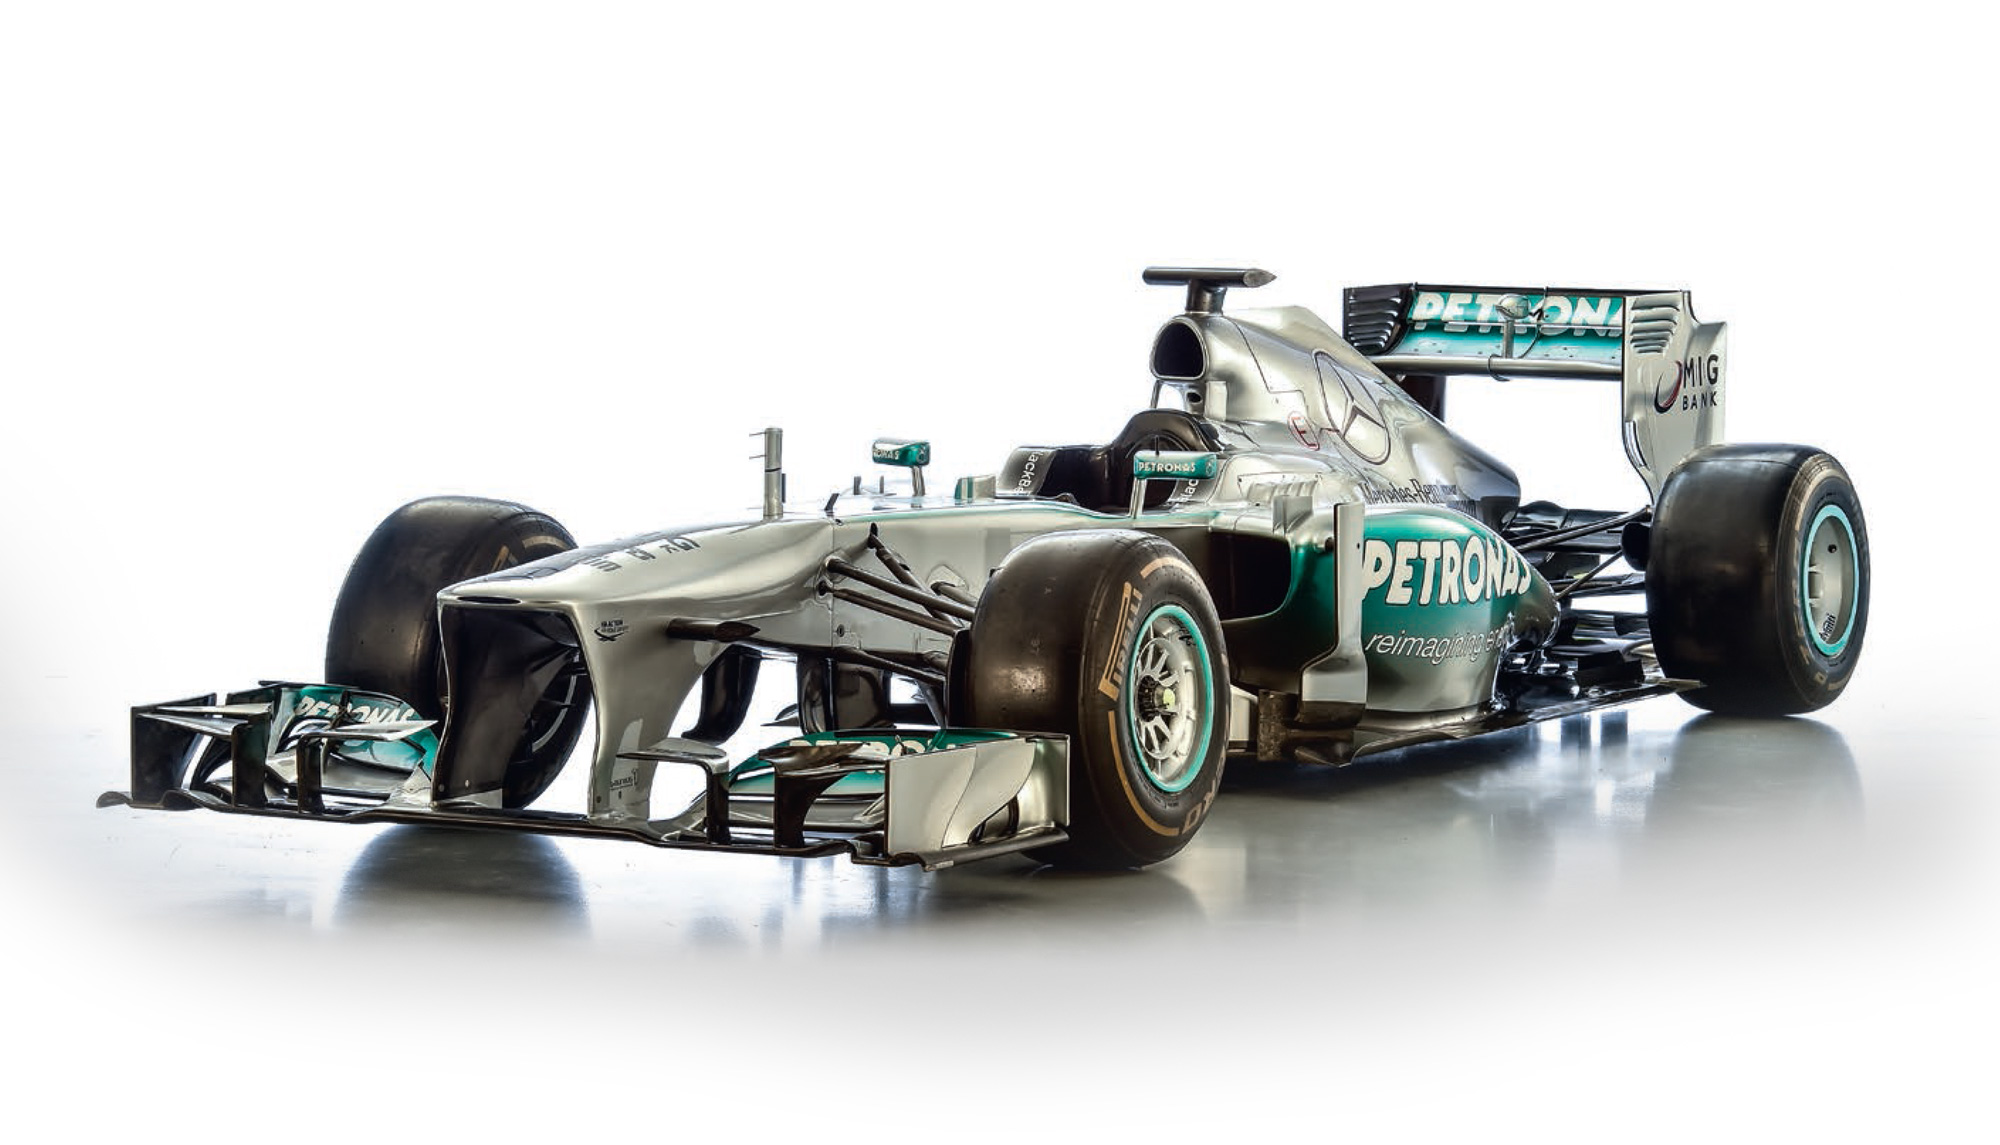 2013 Mercedes AMG Petronas F1 W04